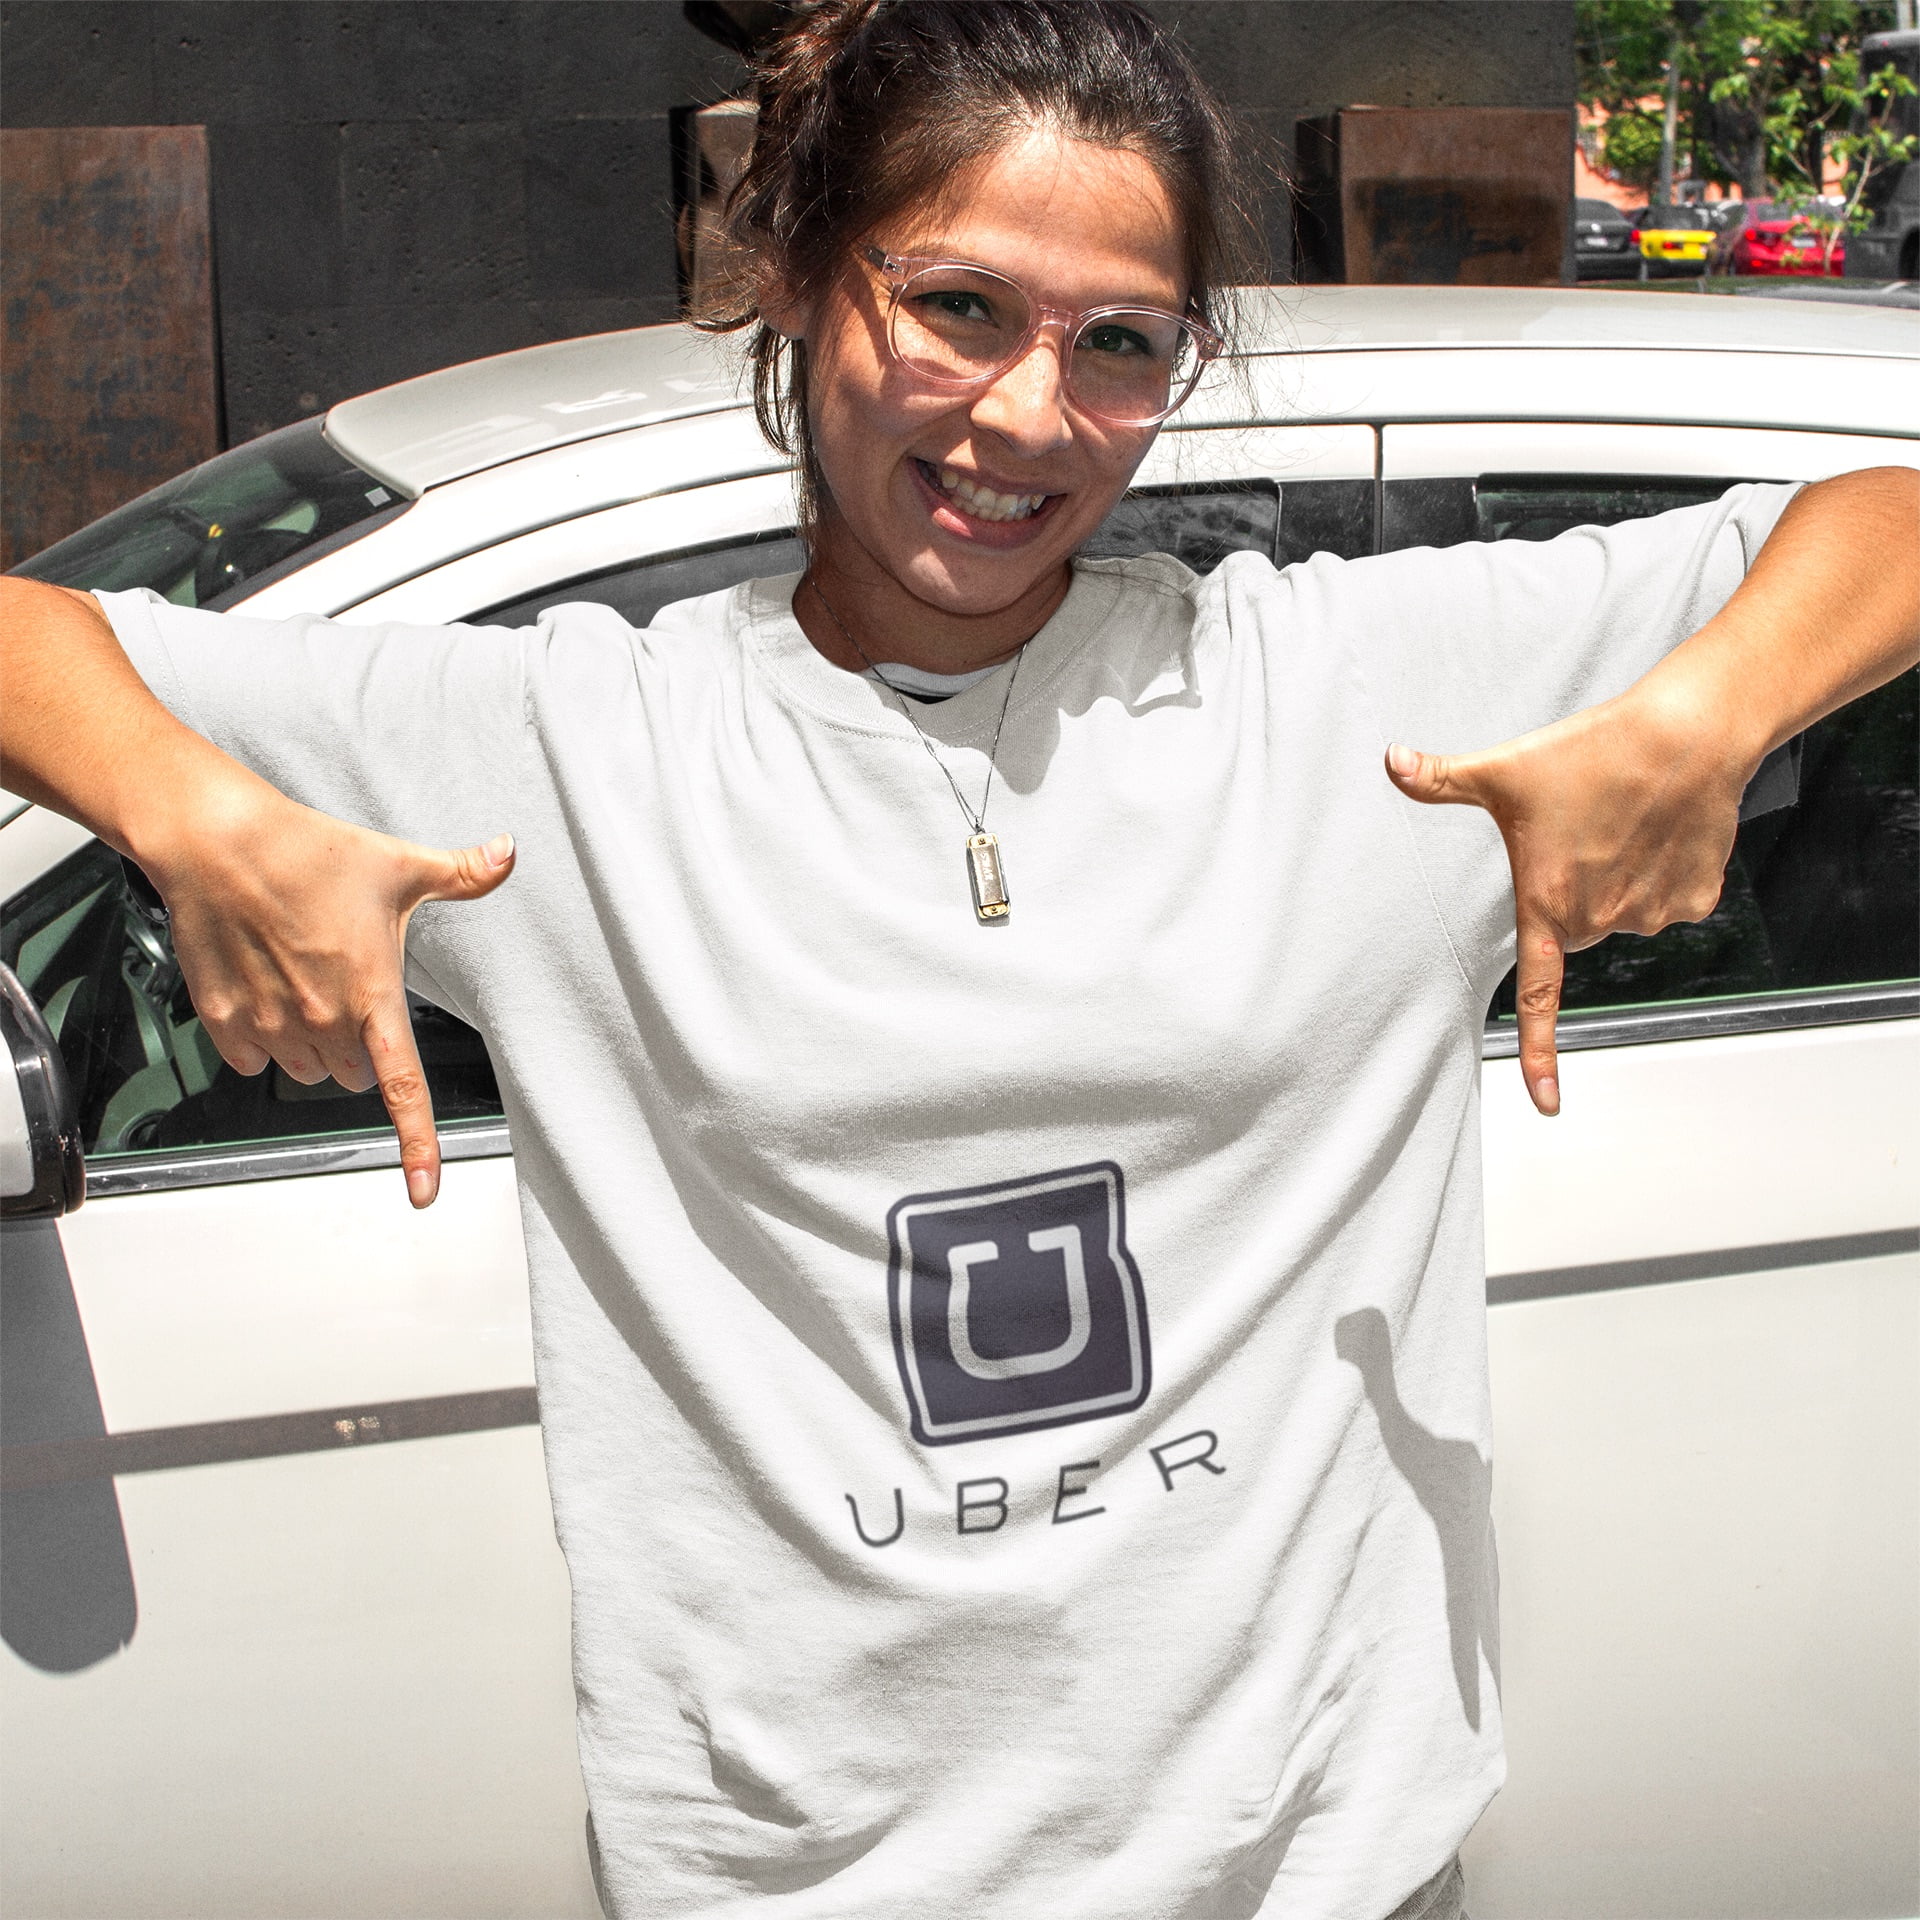 La Cour d’appel considère Uber davantage comme un employeur mais attend…